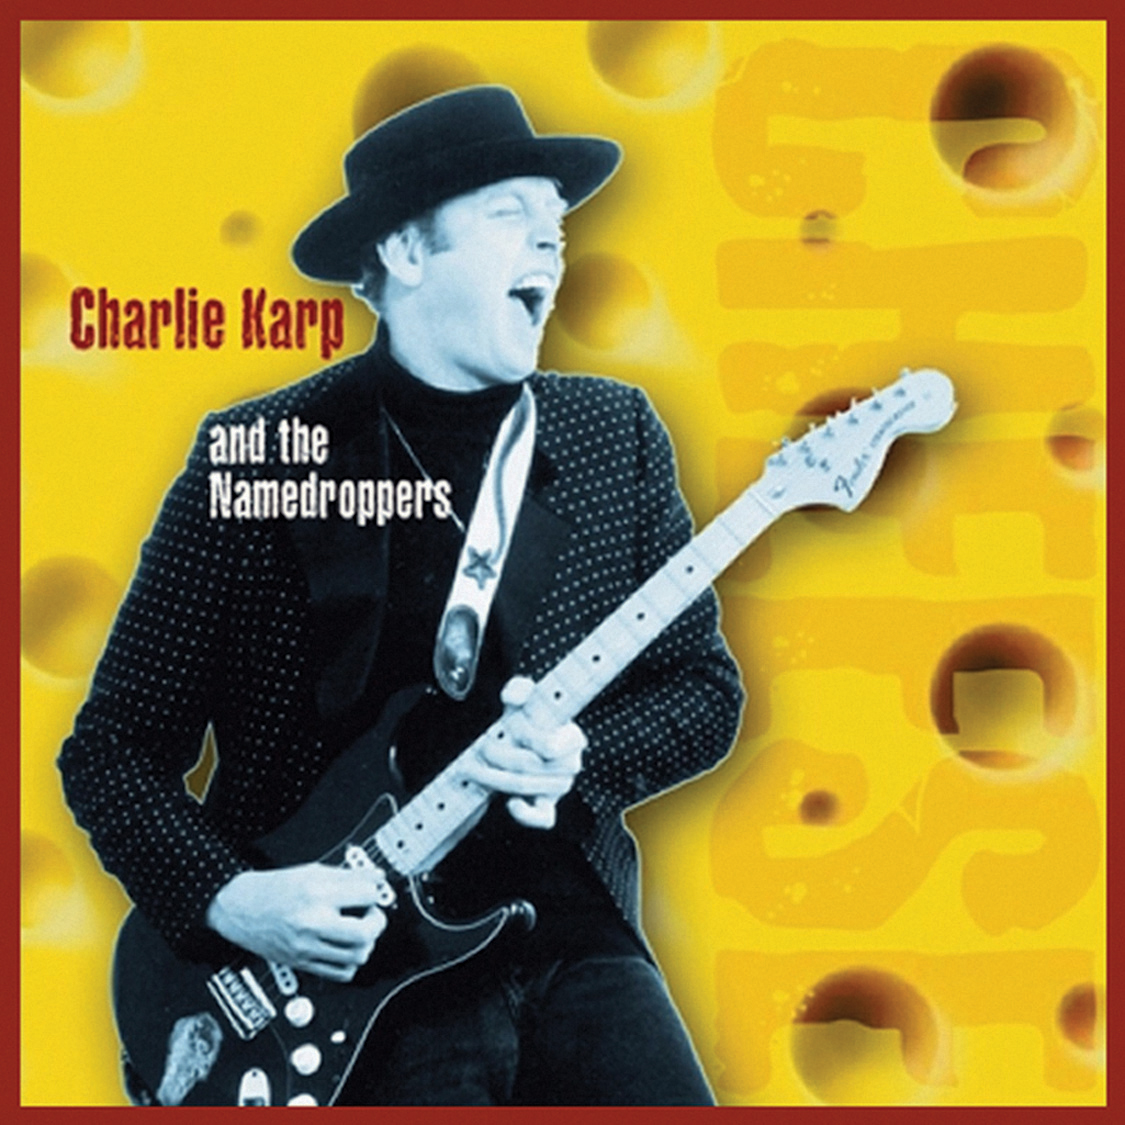 Charlie Karp Cheese Album Art 2011